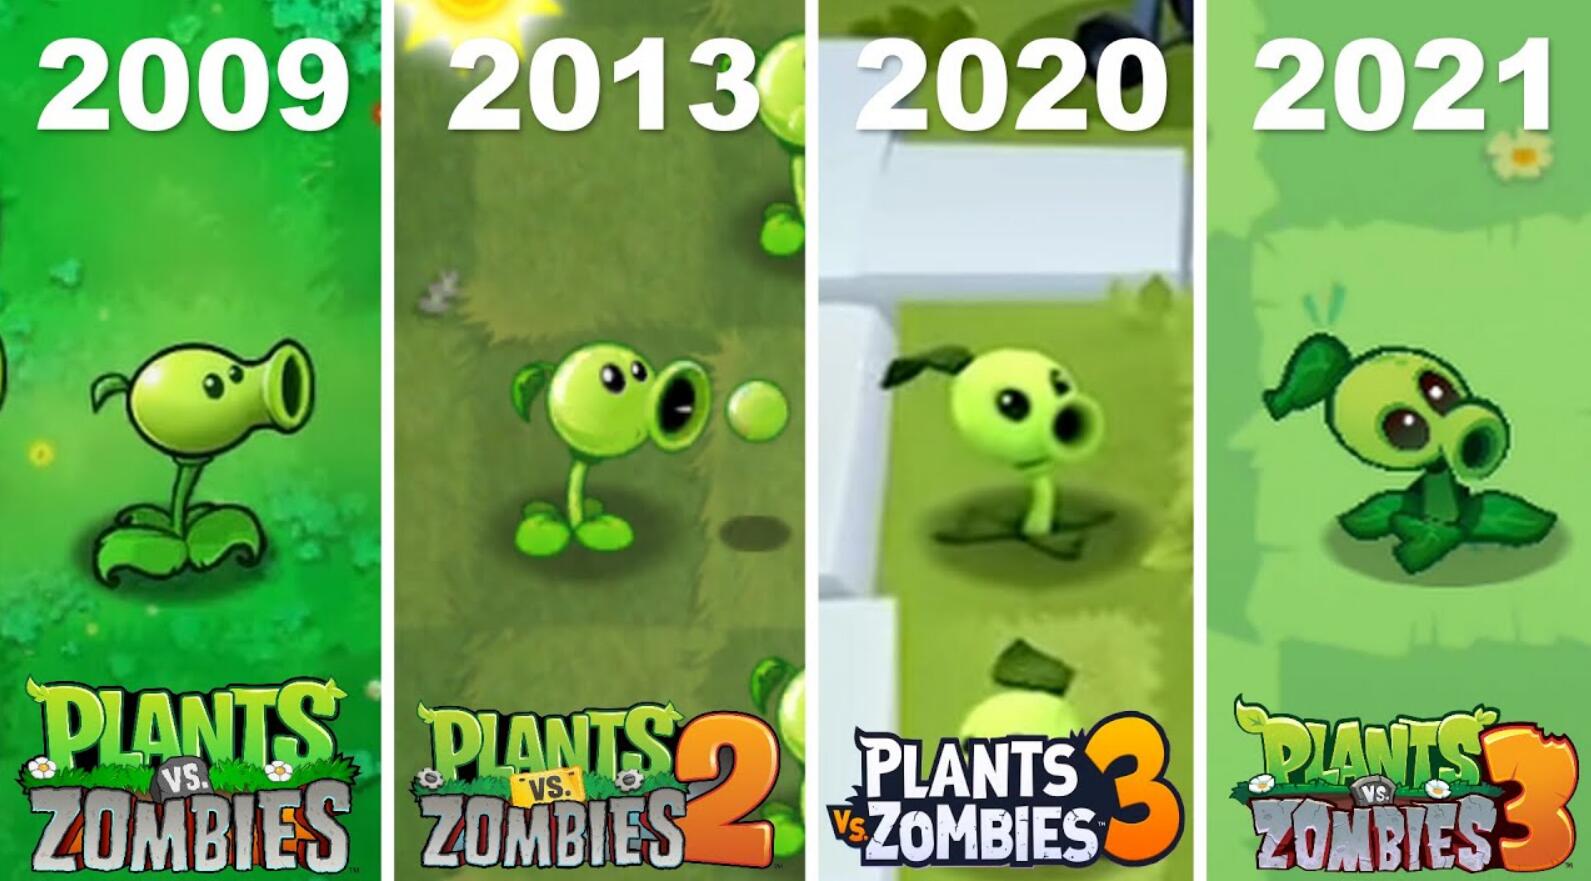 《植物大戰僵屍》2009 ~ 2021遊戲發展 肉眼可見的進步